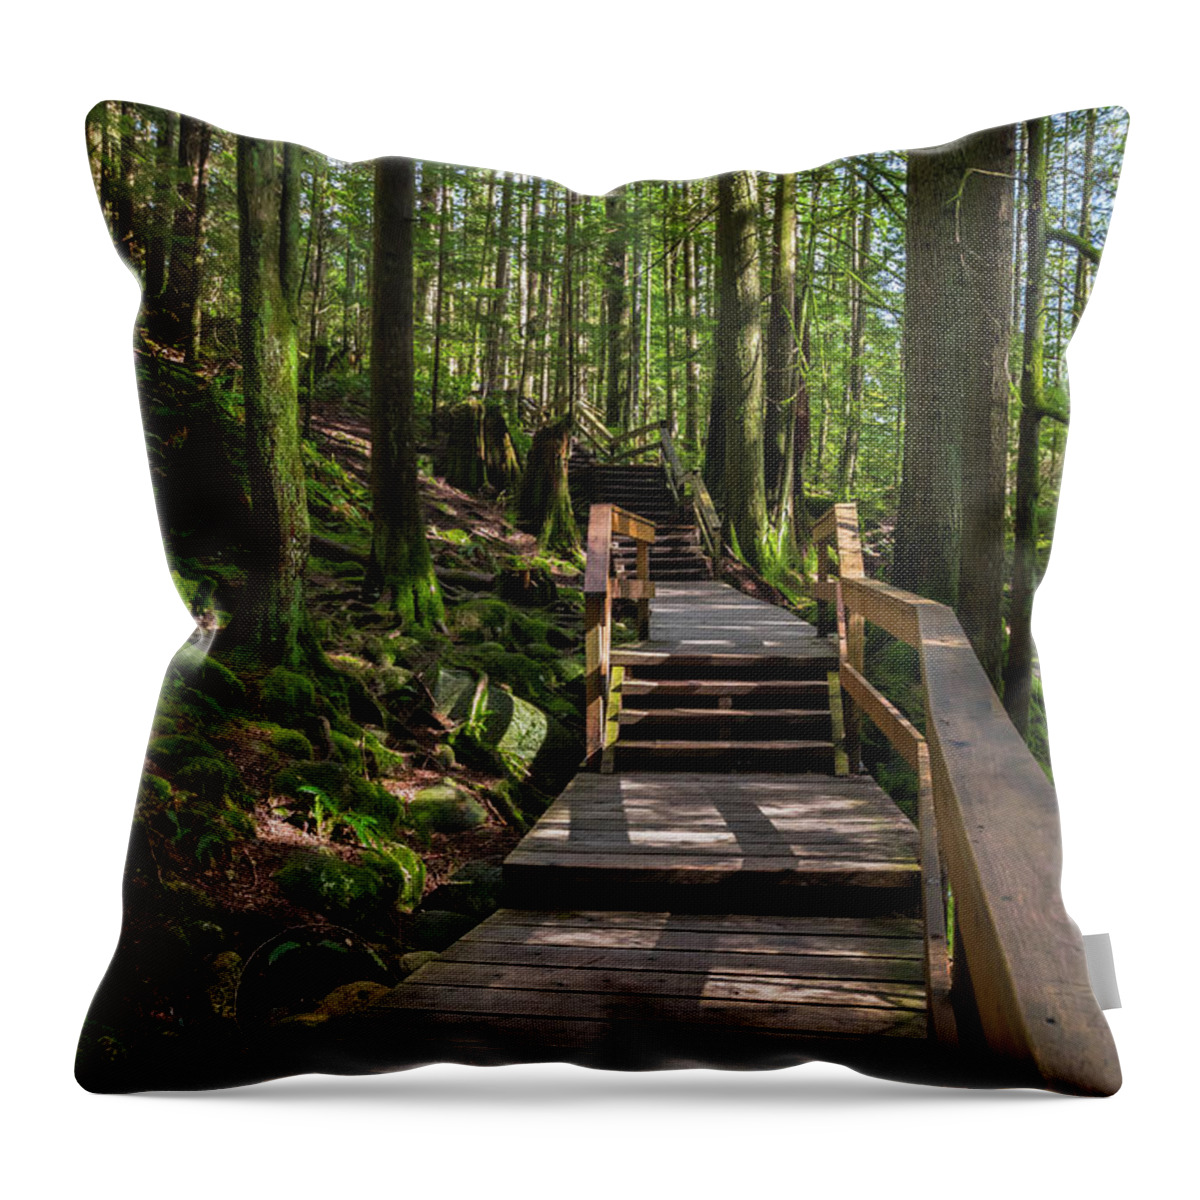 Alex Lyubar Throw Pillow featuring the photograph Wooden Staircase on a Hiking Trail by Alex Lyubar